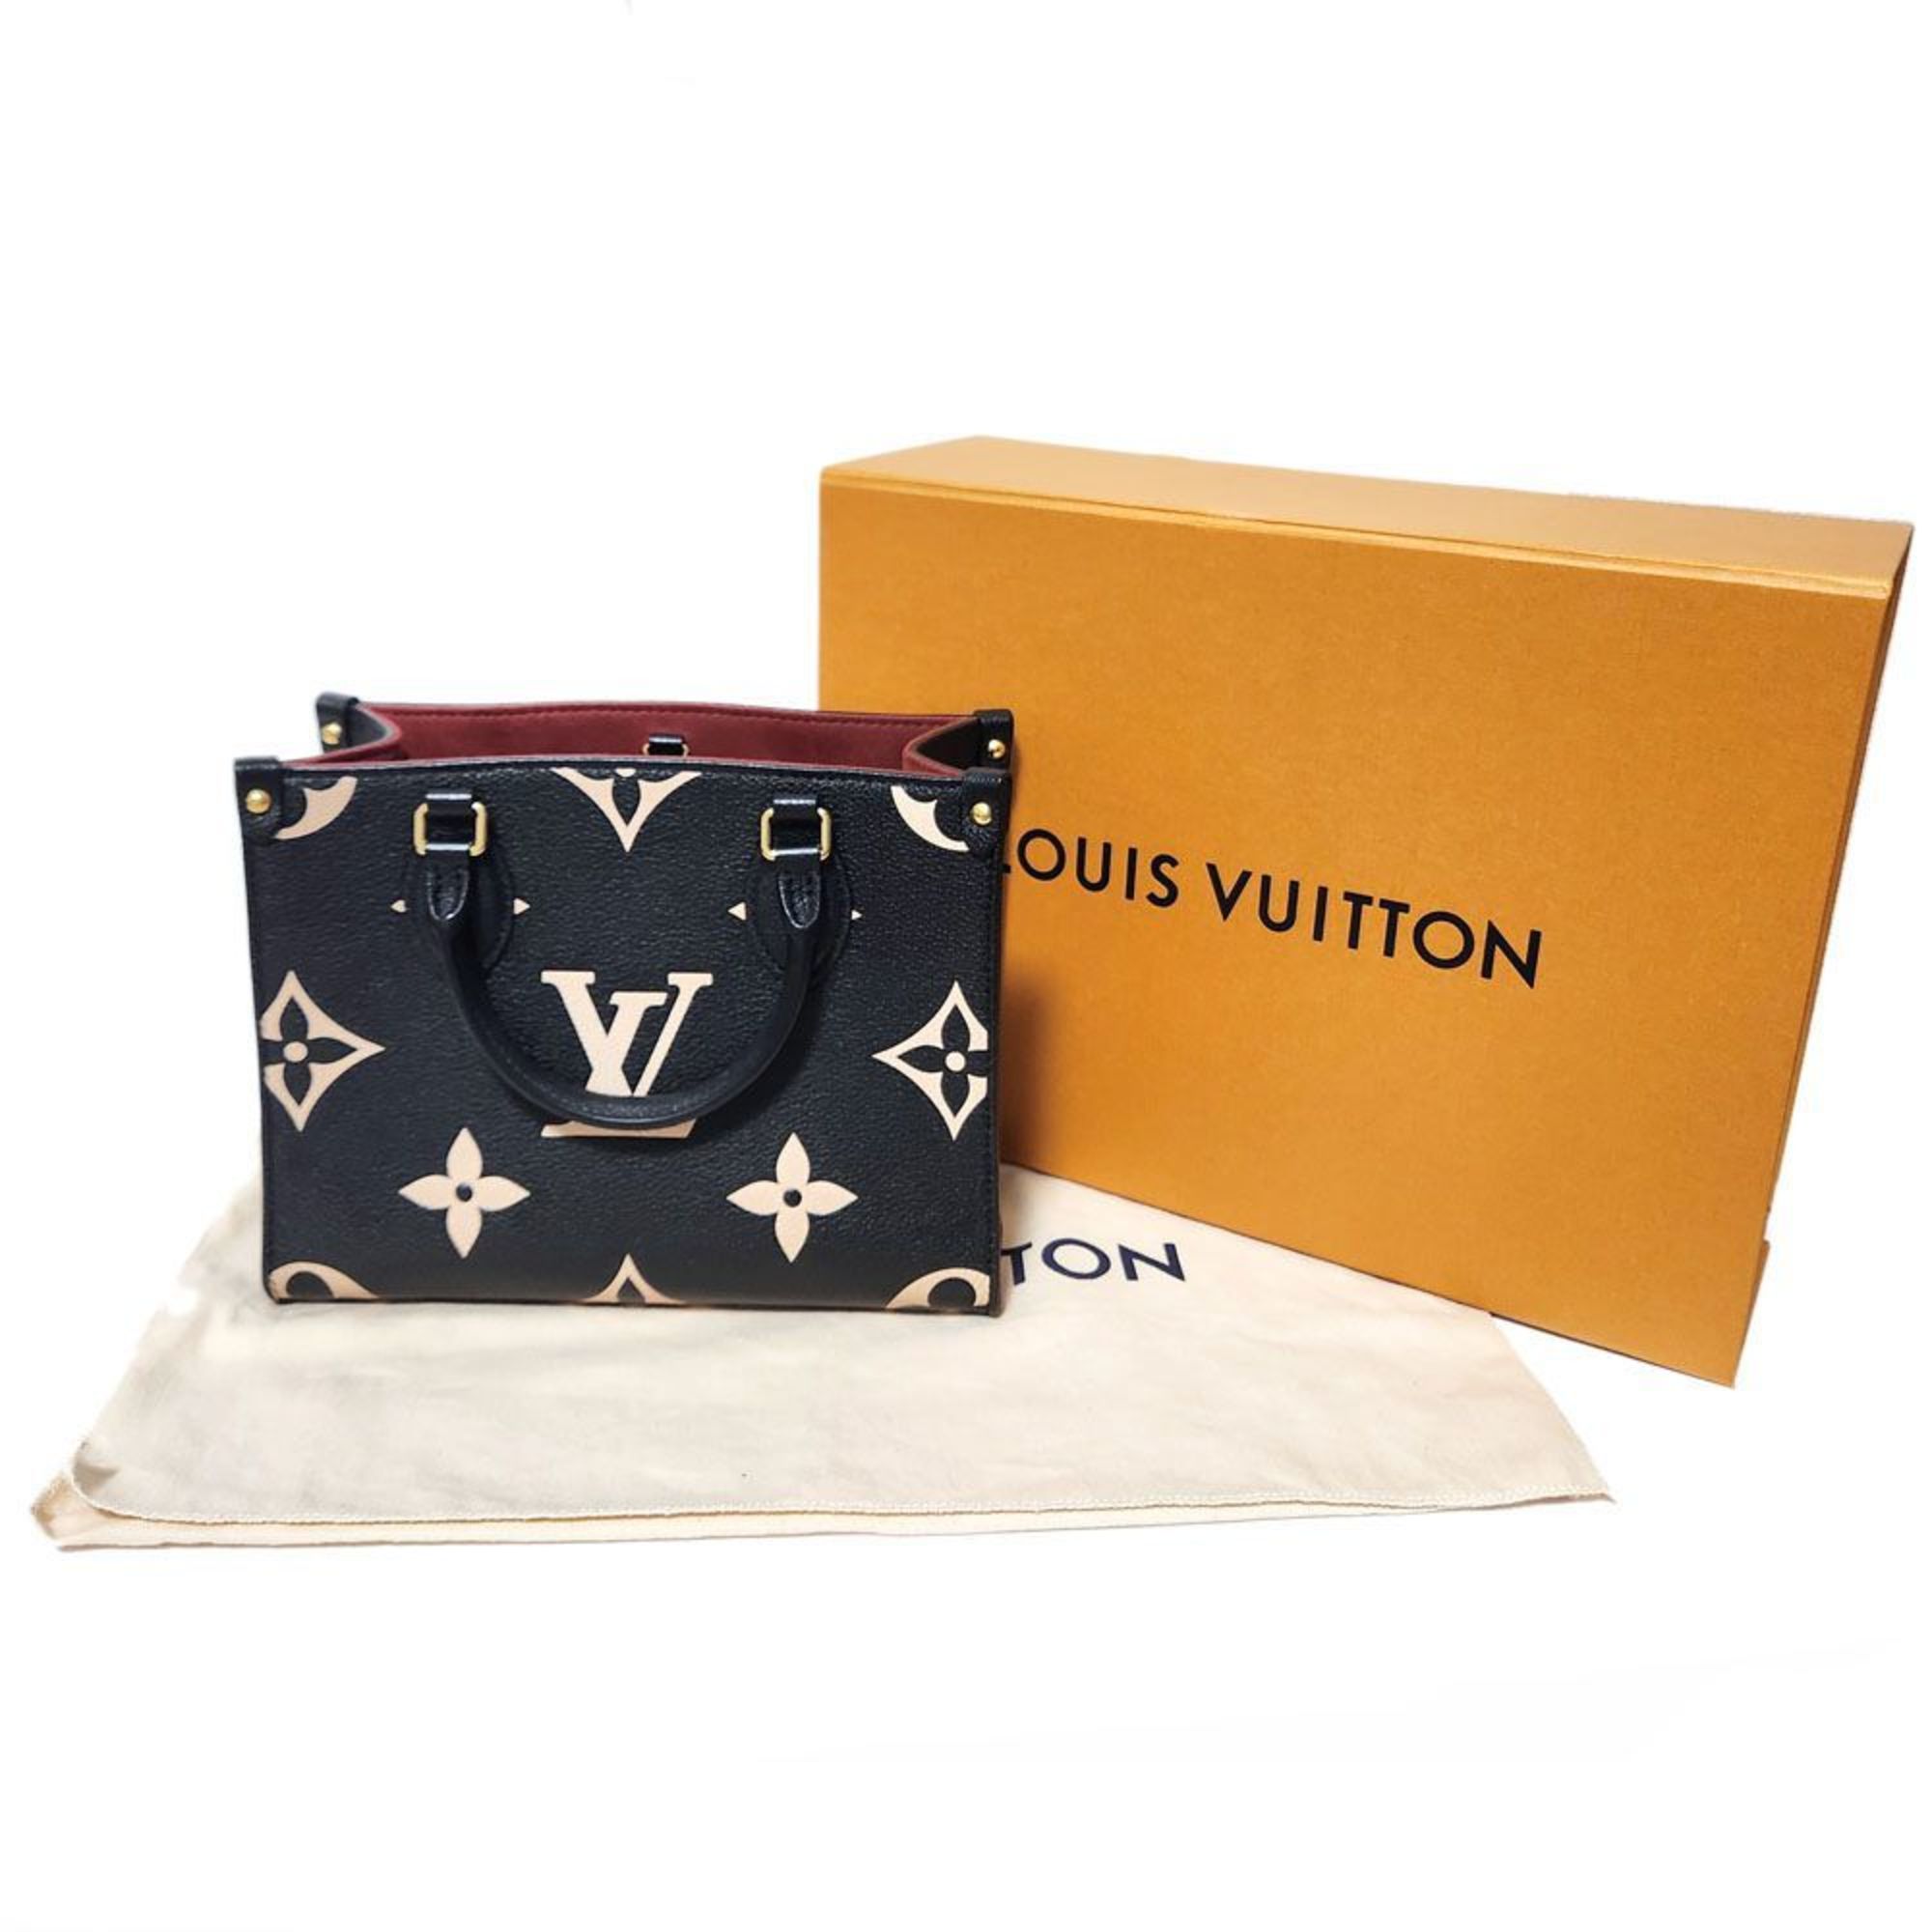 Louis Vuitton LOUISVUITTON Monogram Empreinte On the Go PM M45659 Tote Bag Bicolor Black Beige Women's Leather Handbag Back